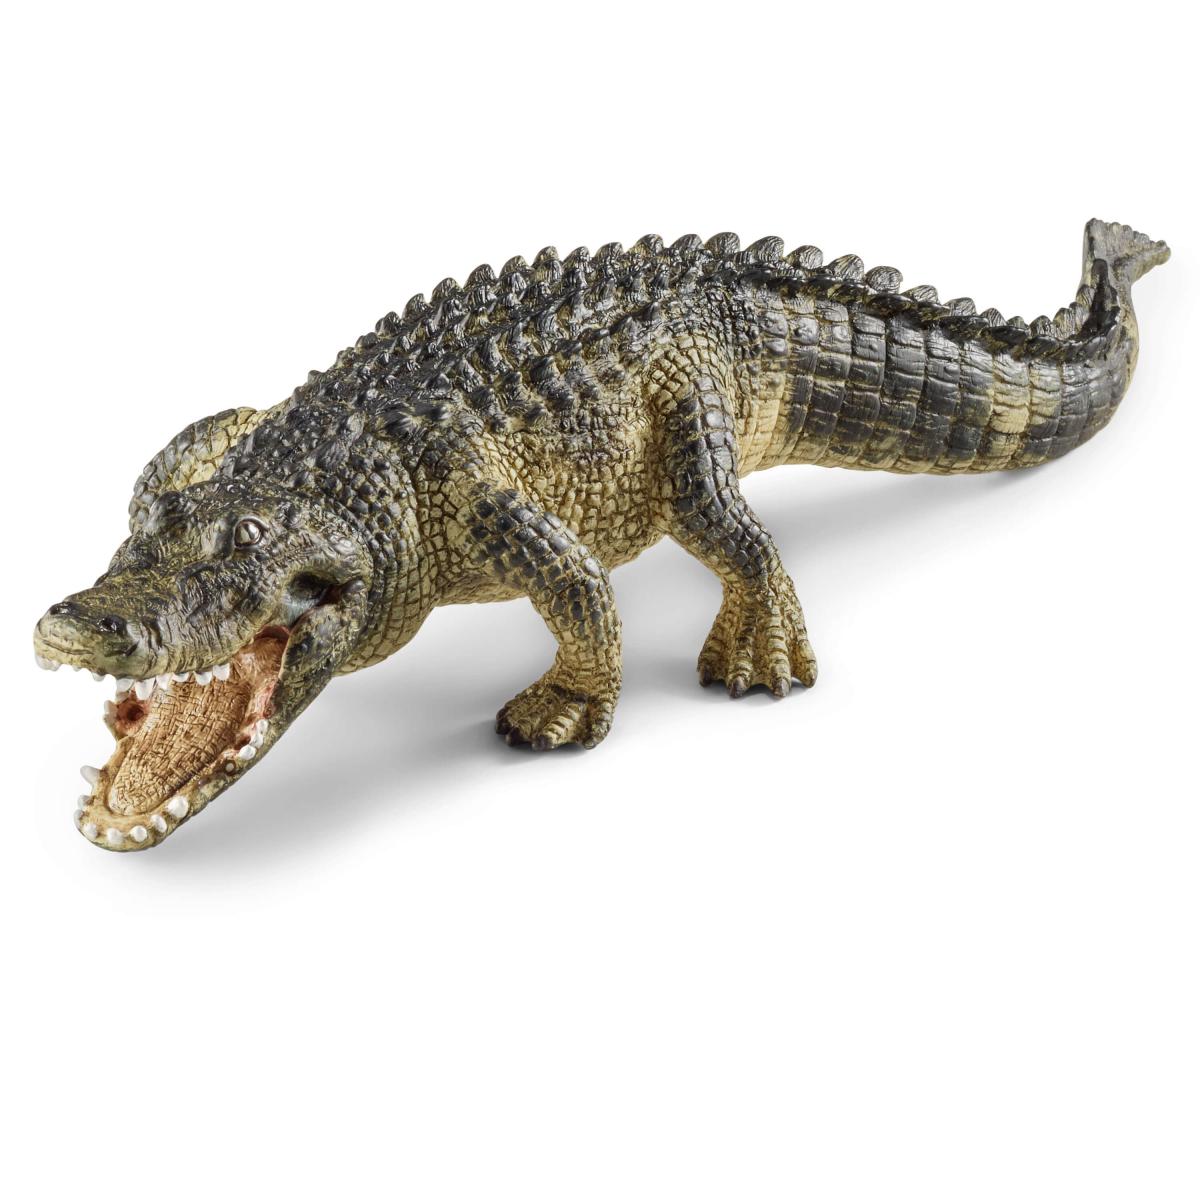 Alligator 8" Figure